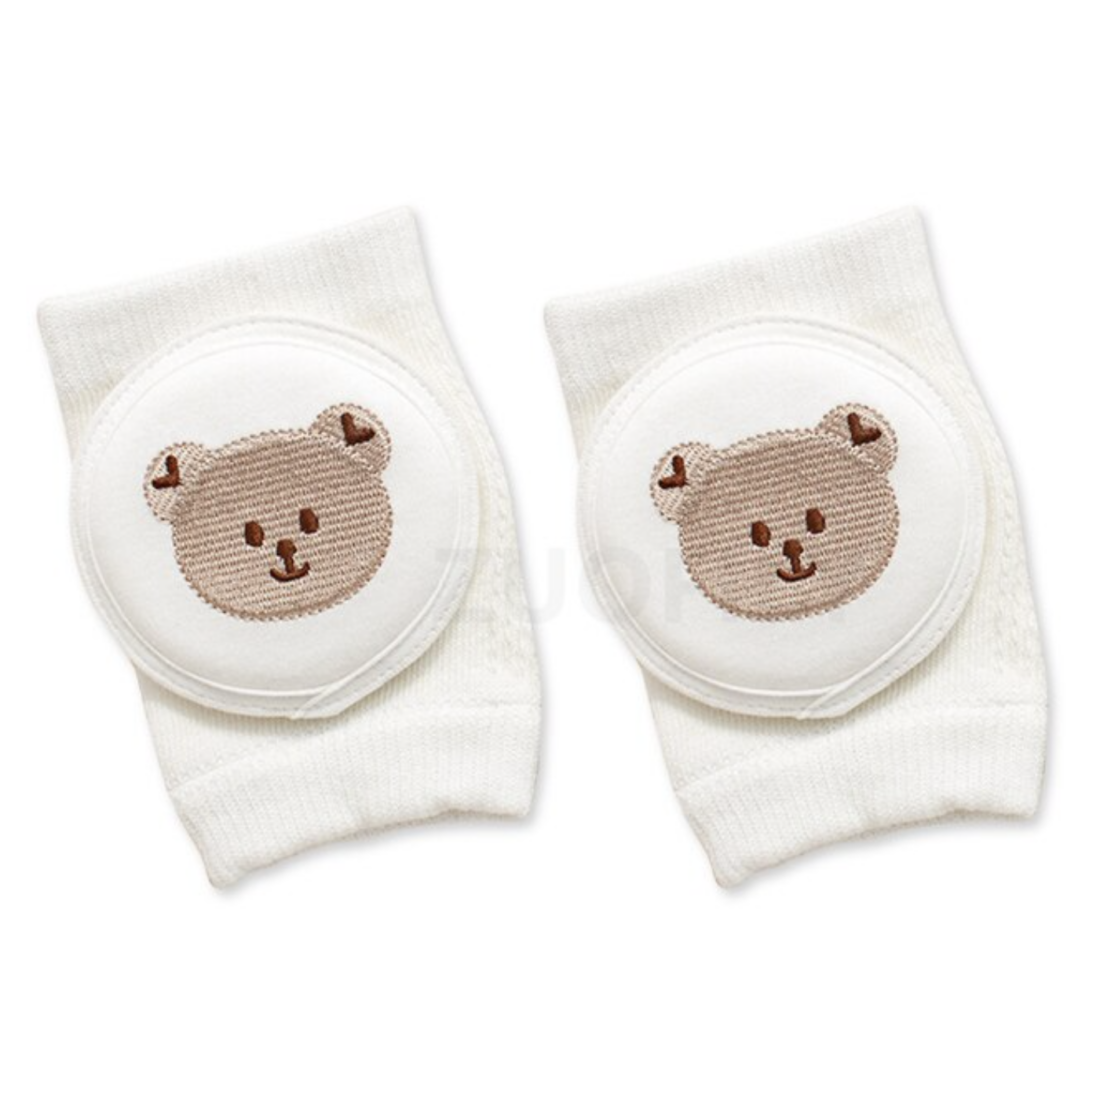 Επιγονατίδες μωρών για την προστασία τους κατά το μπουσούλισμα “bear”